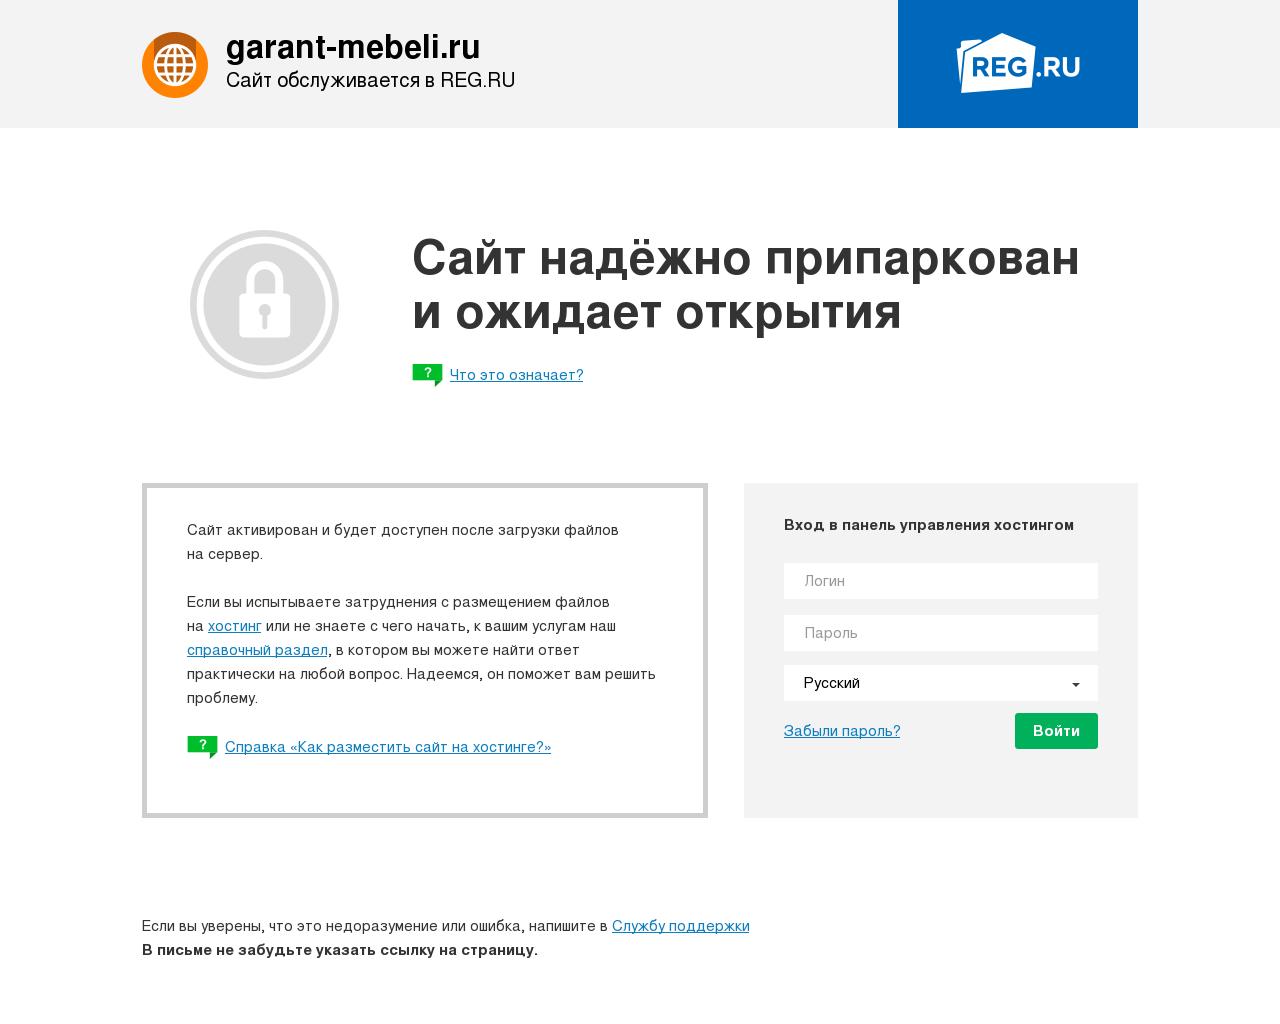 Изображение сайта garant-mebeli.ru в разрешении 1280x1024